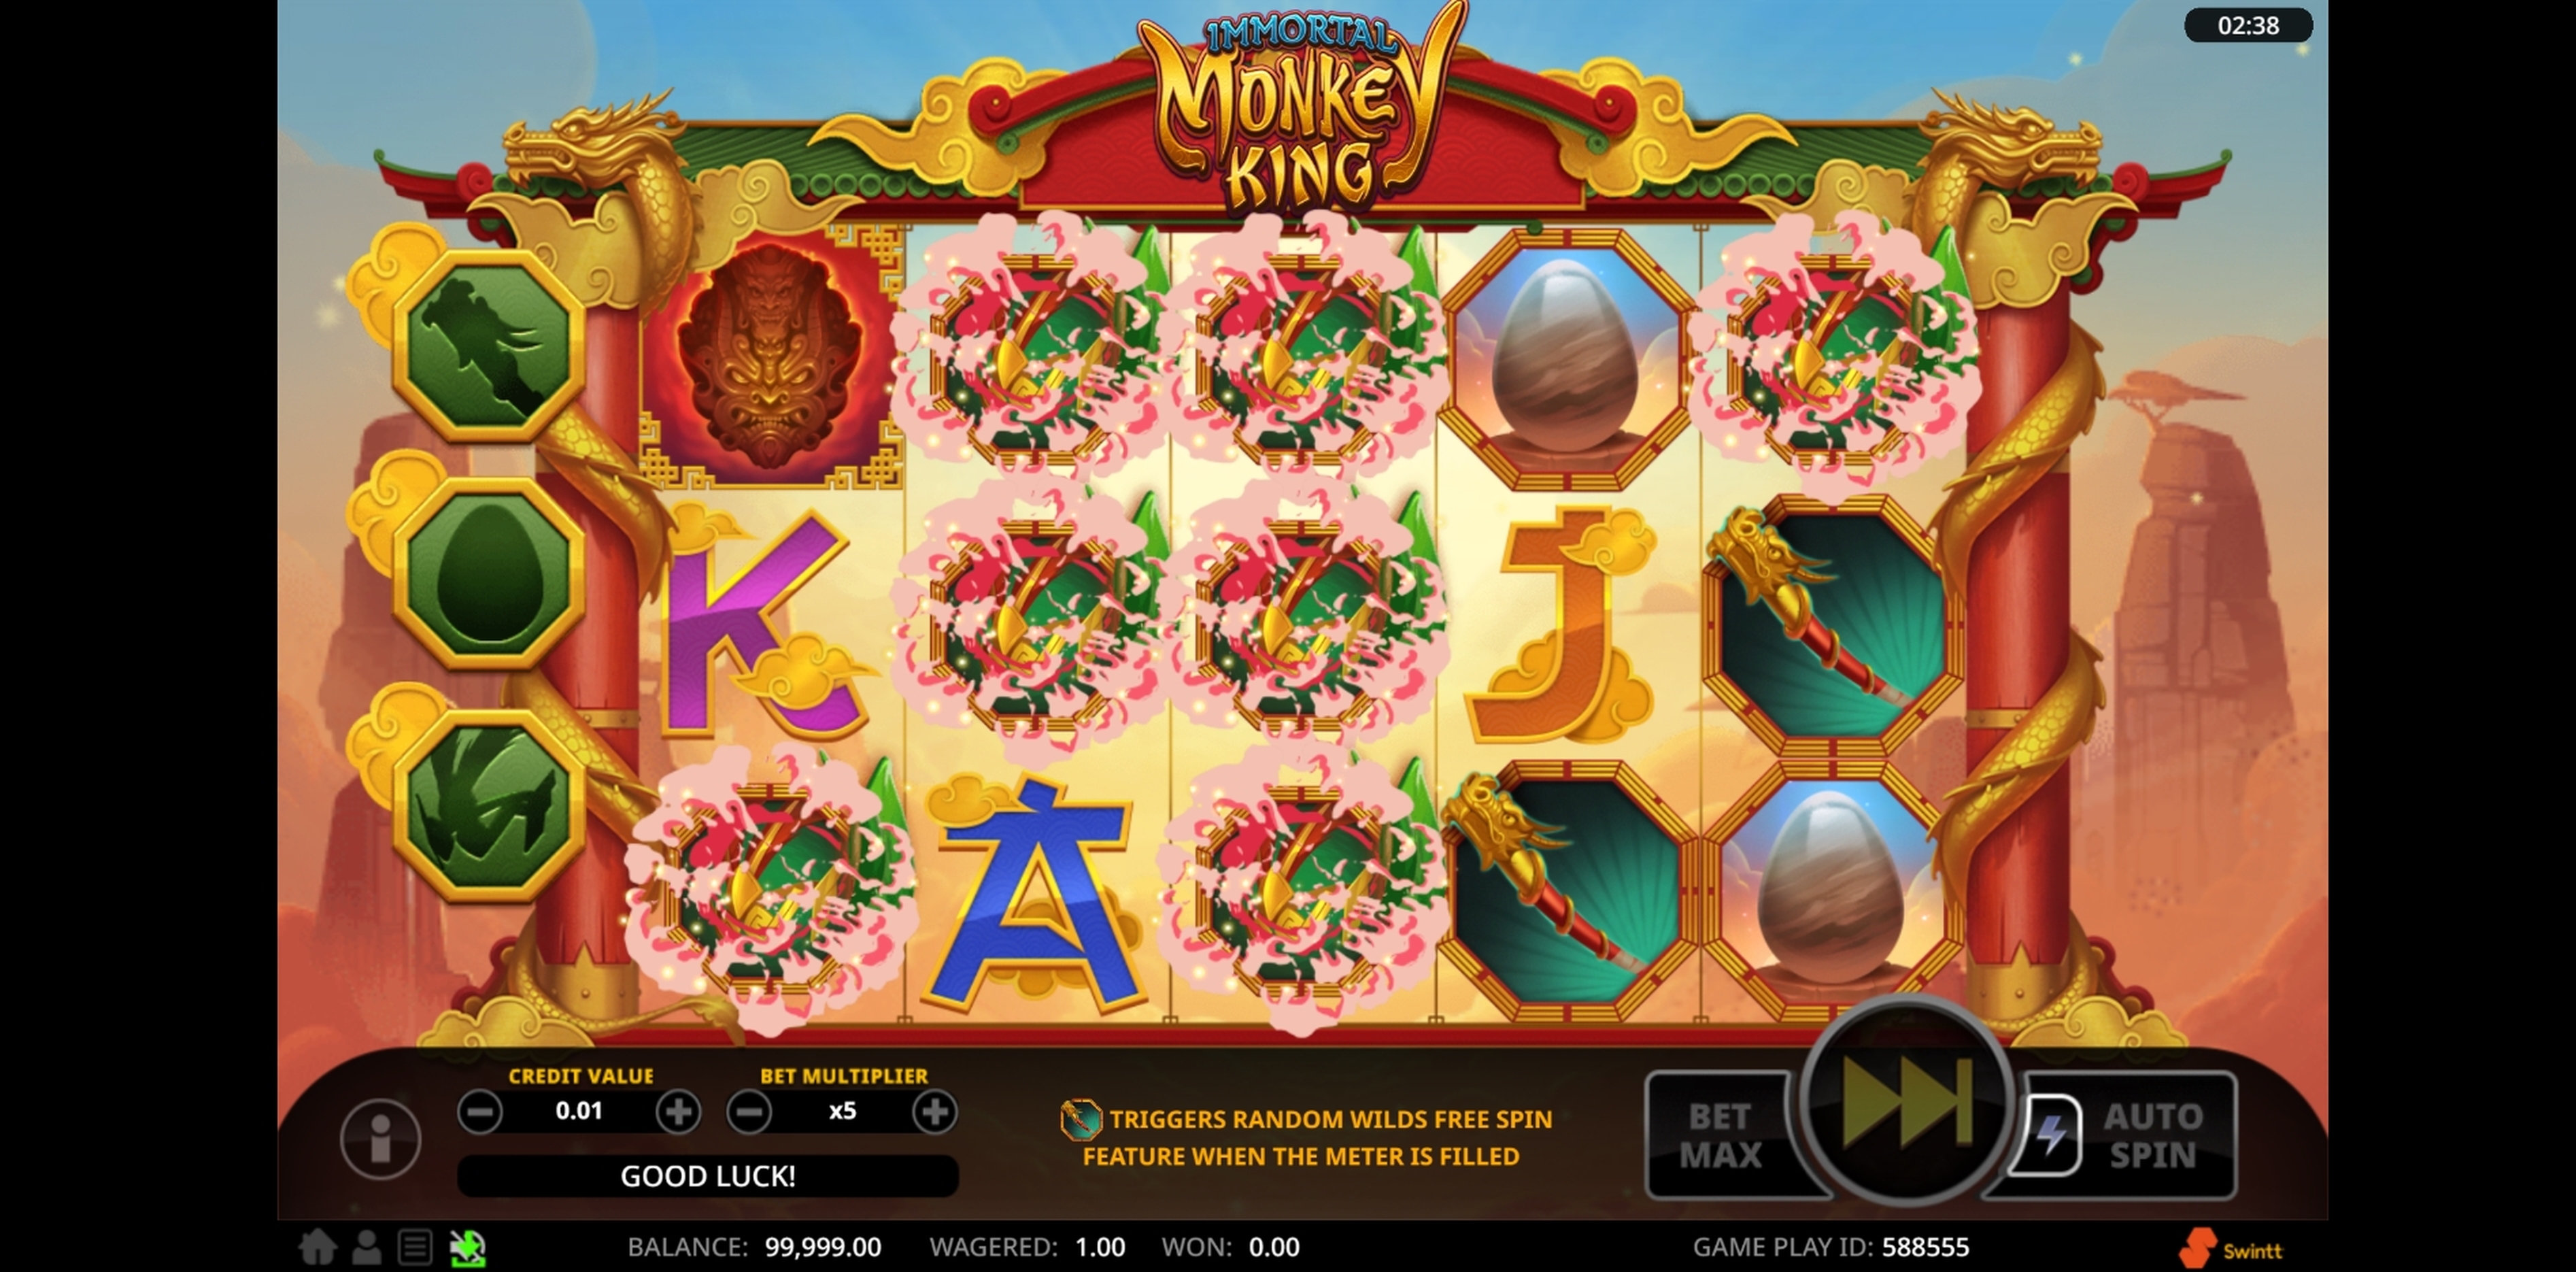 Win Money in Immortal Monkey King Free Slot Game by Swintt